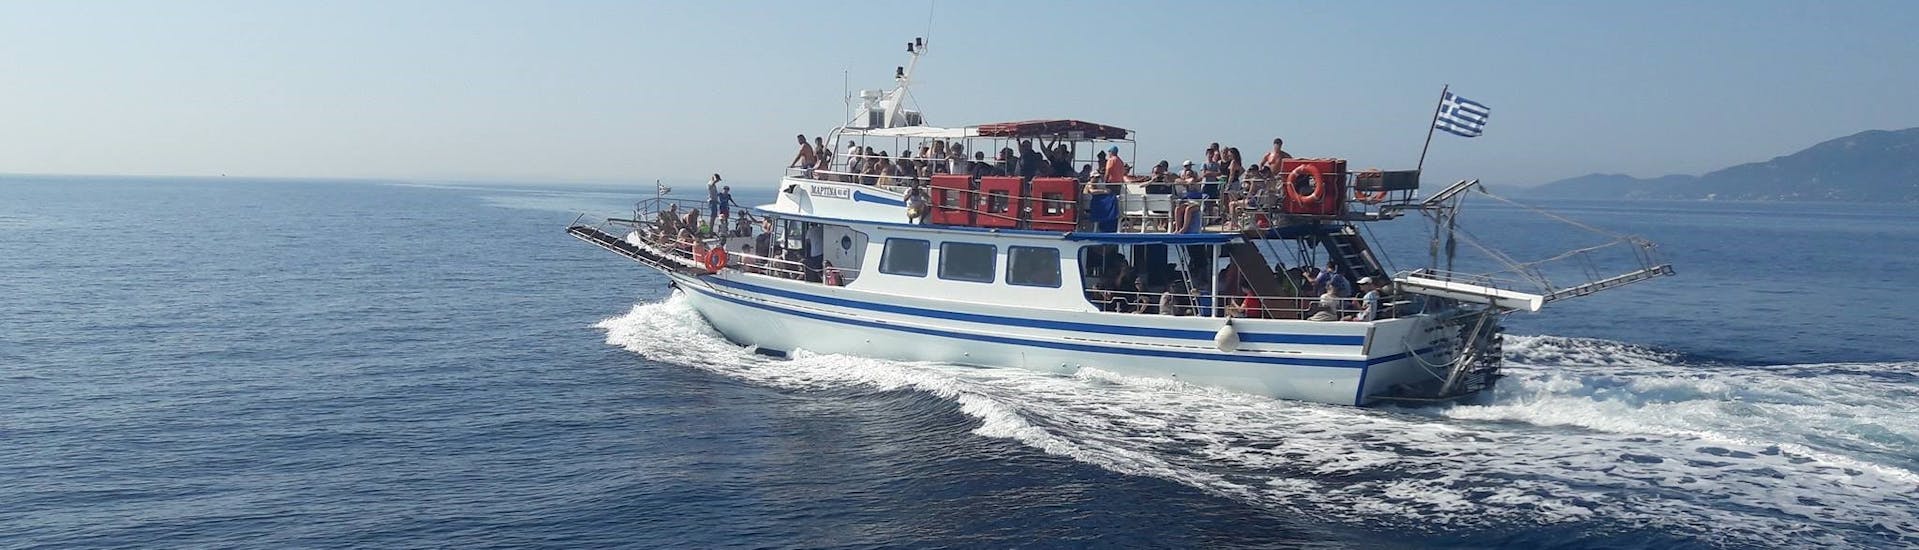 Balade en bateau Ville de Corfou - Syvota avec Baignade & Visites touristiques.